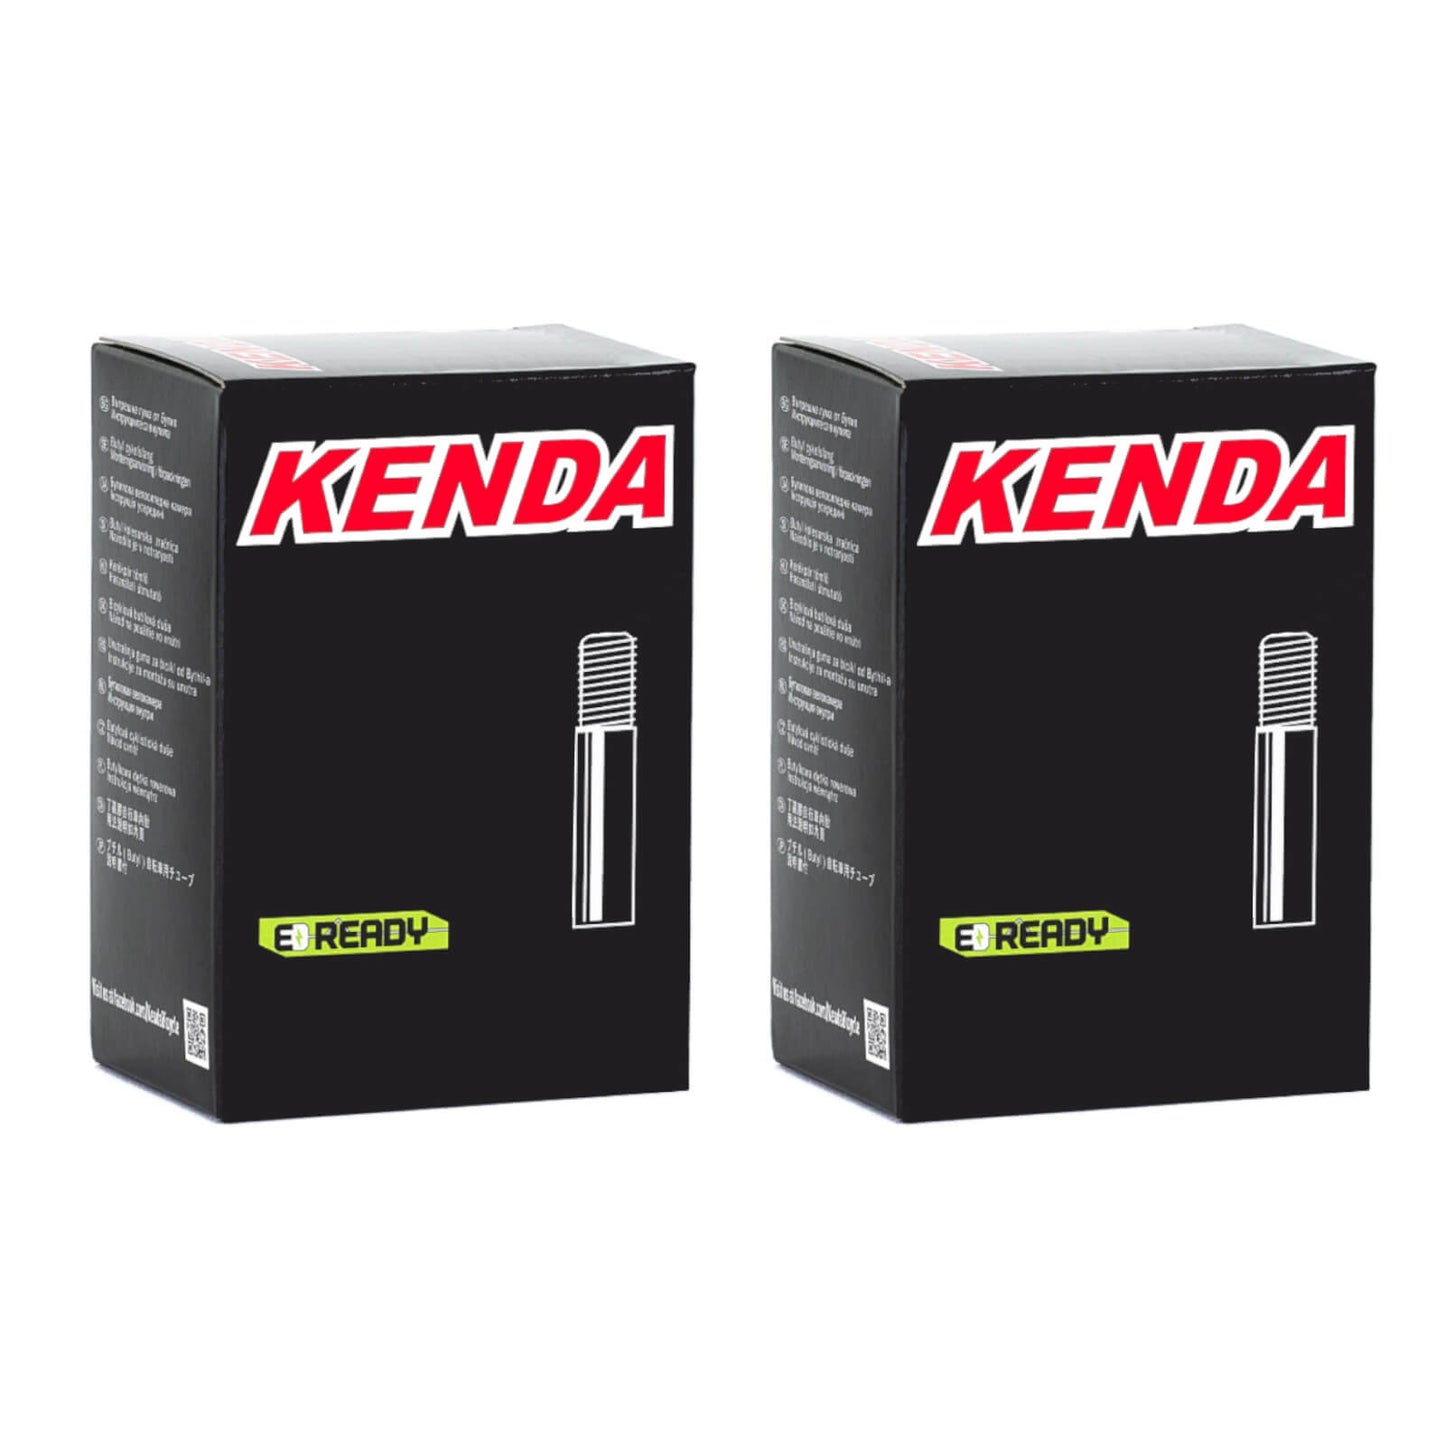 Kenda 27.5x2.4-2.8" 27.5 Inch Schrader Valve Bike Inner Tube Pack of 2